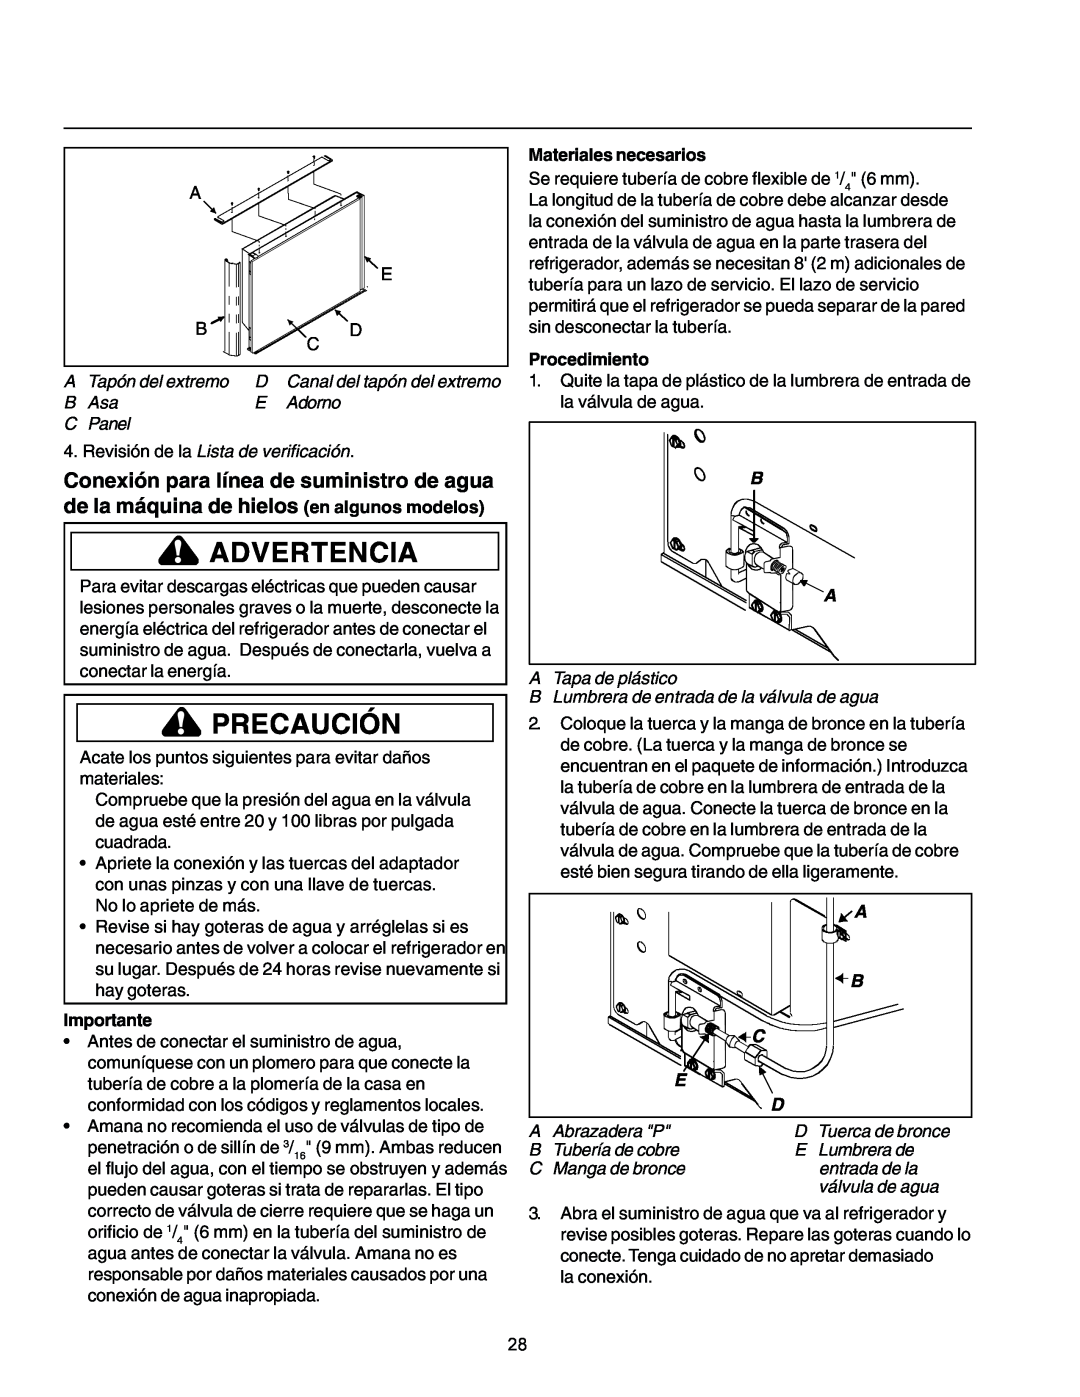 Amana IA 52204-0001 owner manual Importante, Materiales necesarios, Procedimiento, Advertencia, Precaución 